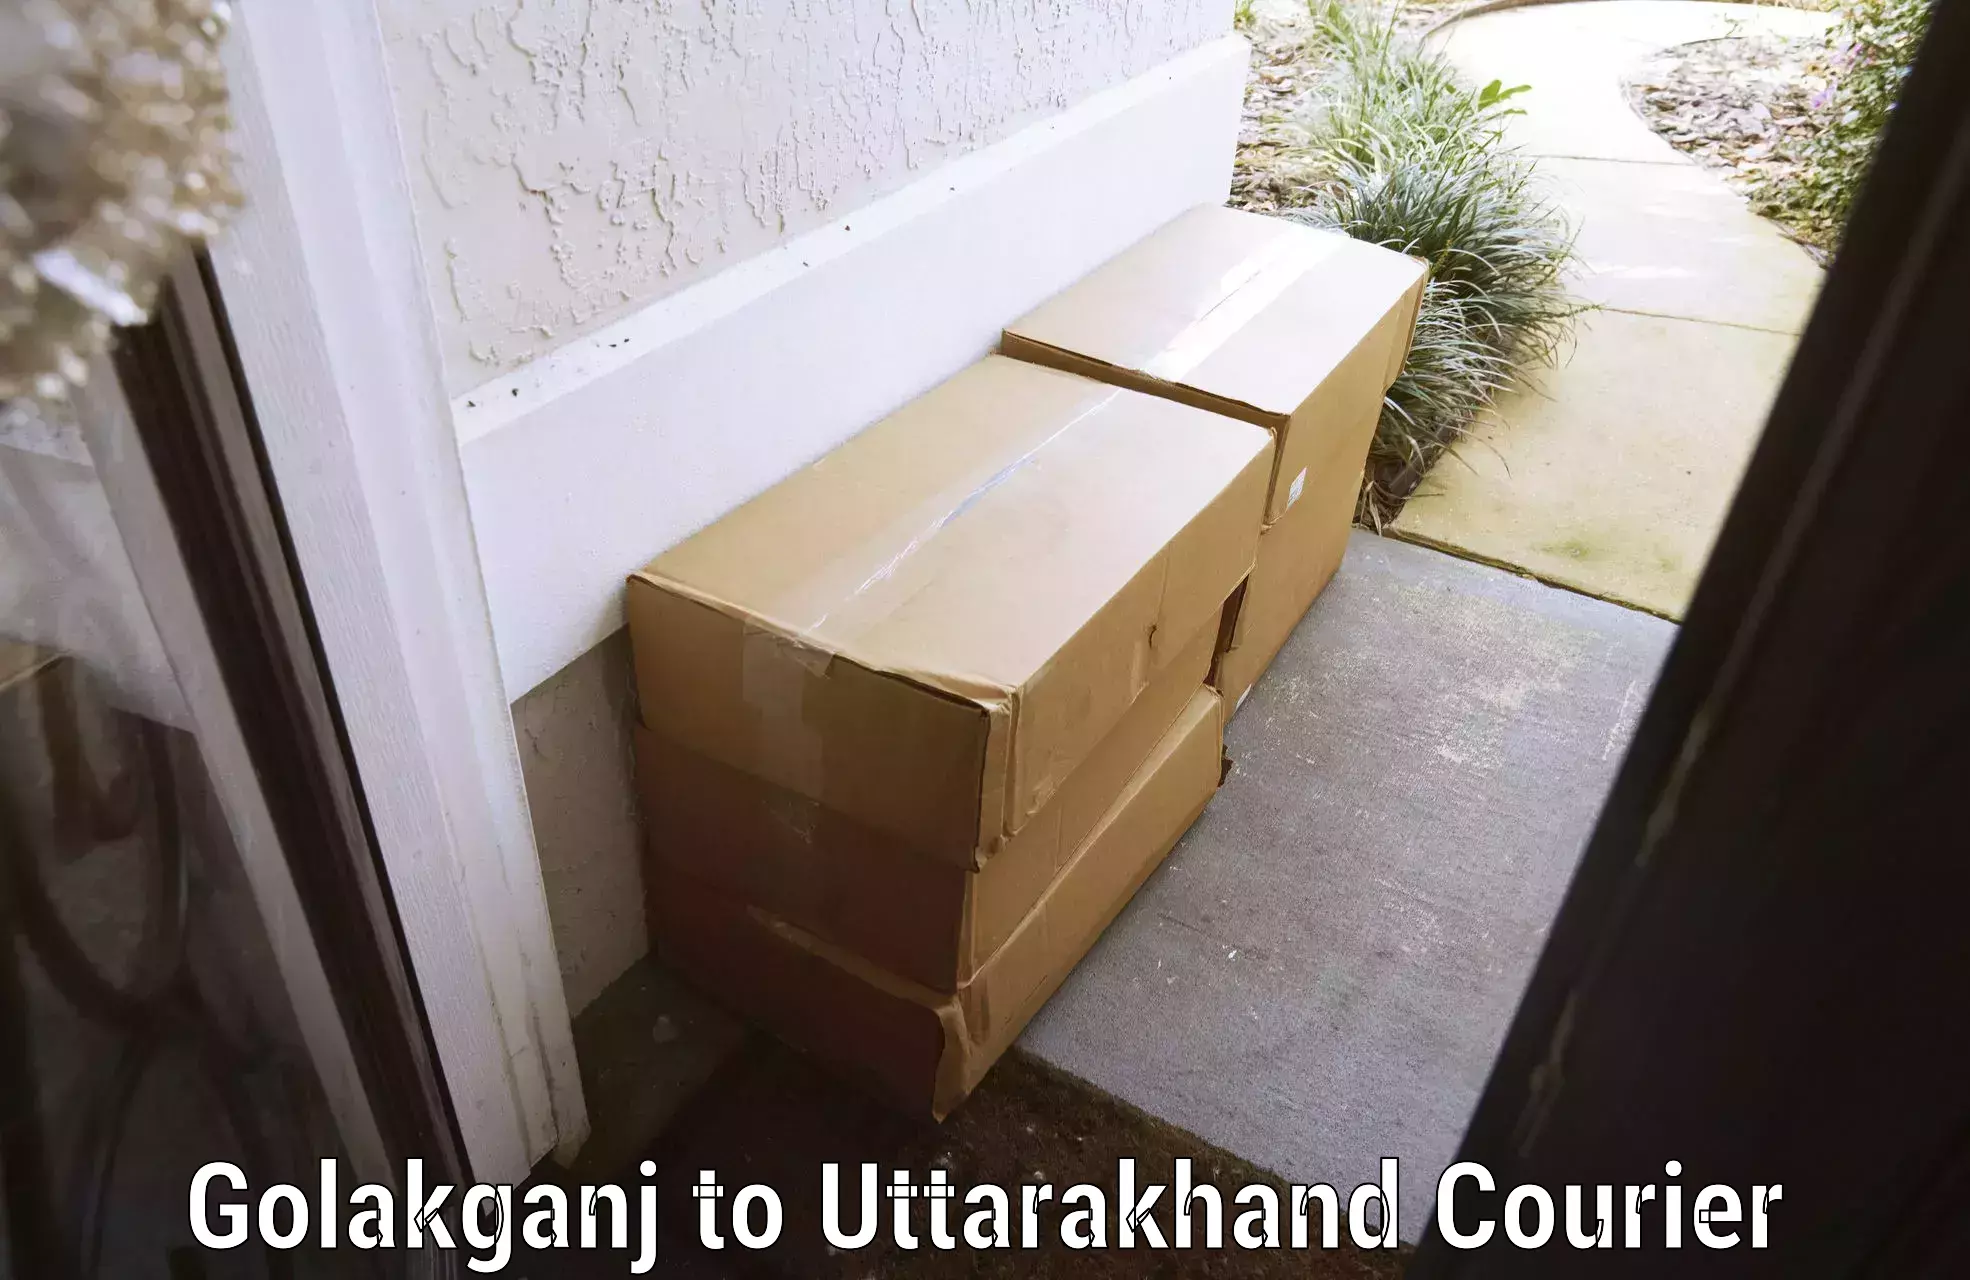 Luggage transport company Golakganj to Dwarahat